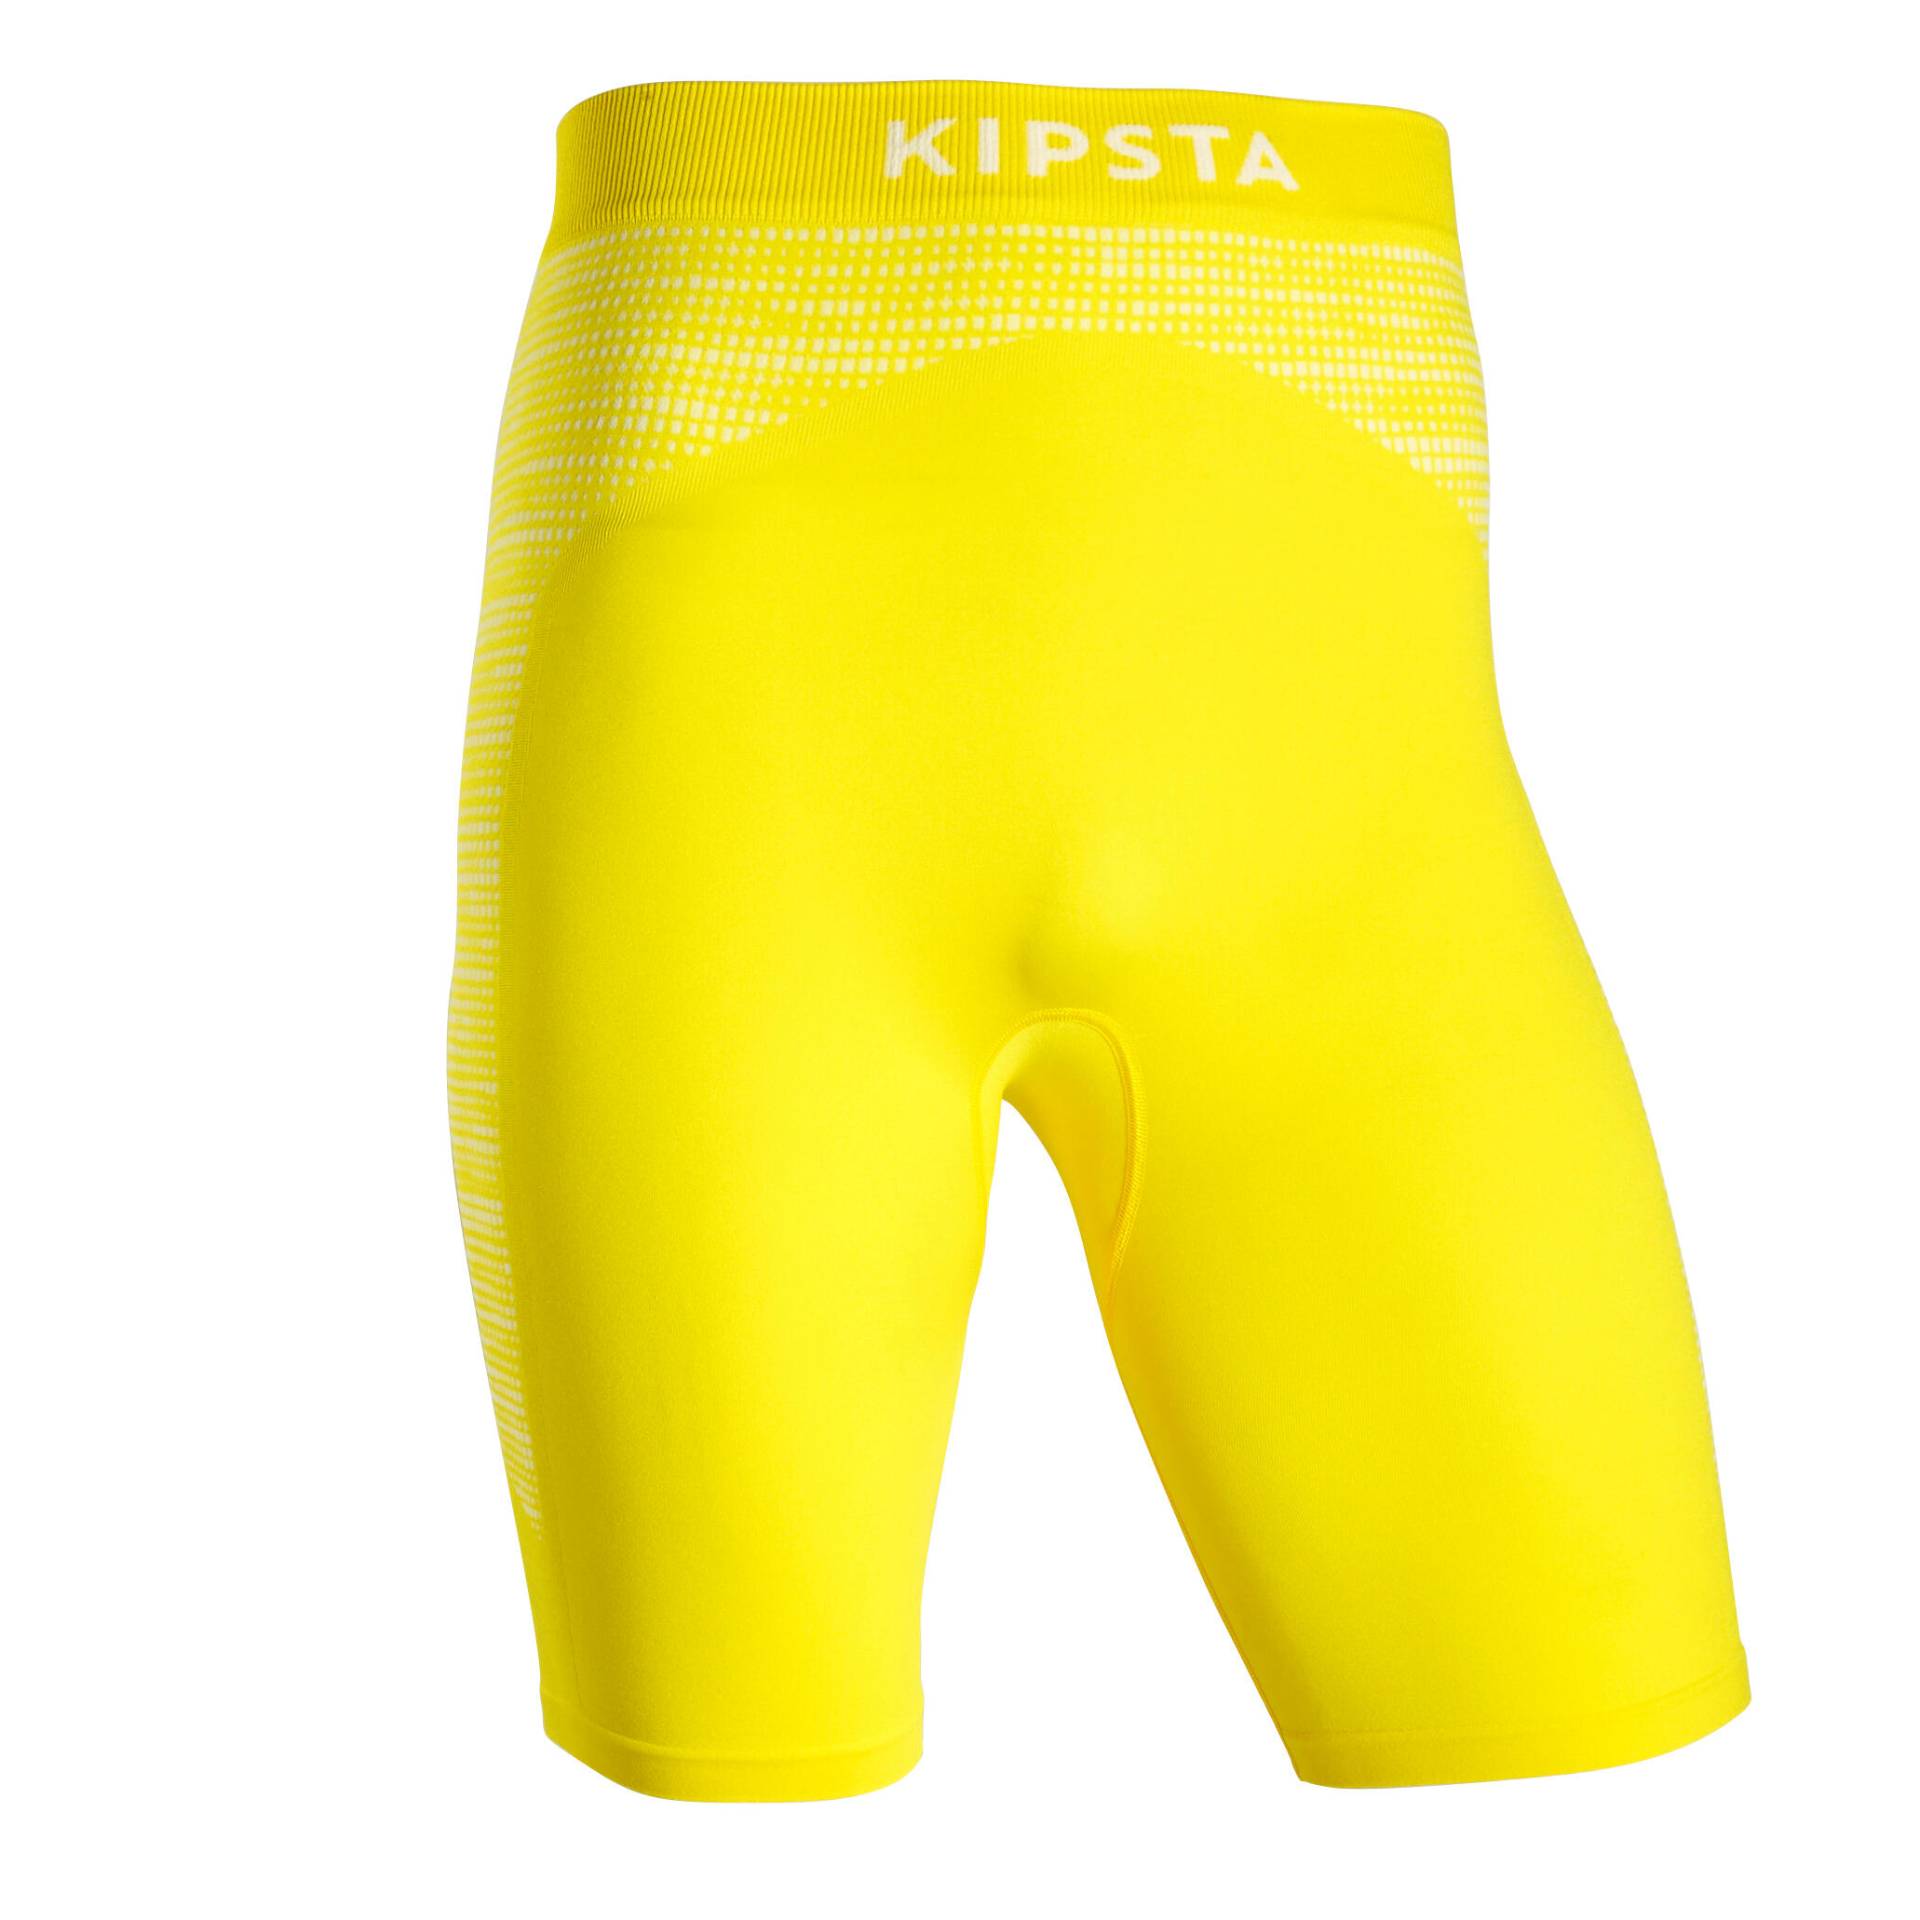 Damen/Herren Fussball Funktionsshorts - Keepdry 500 gelb von KIPSTA